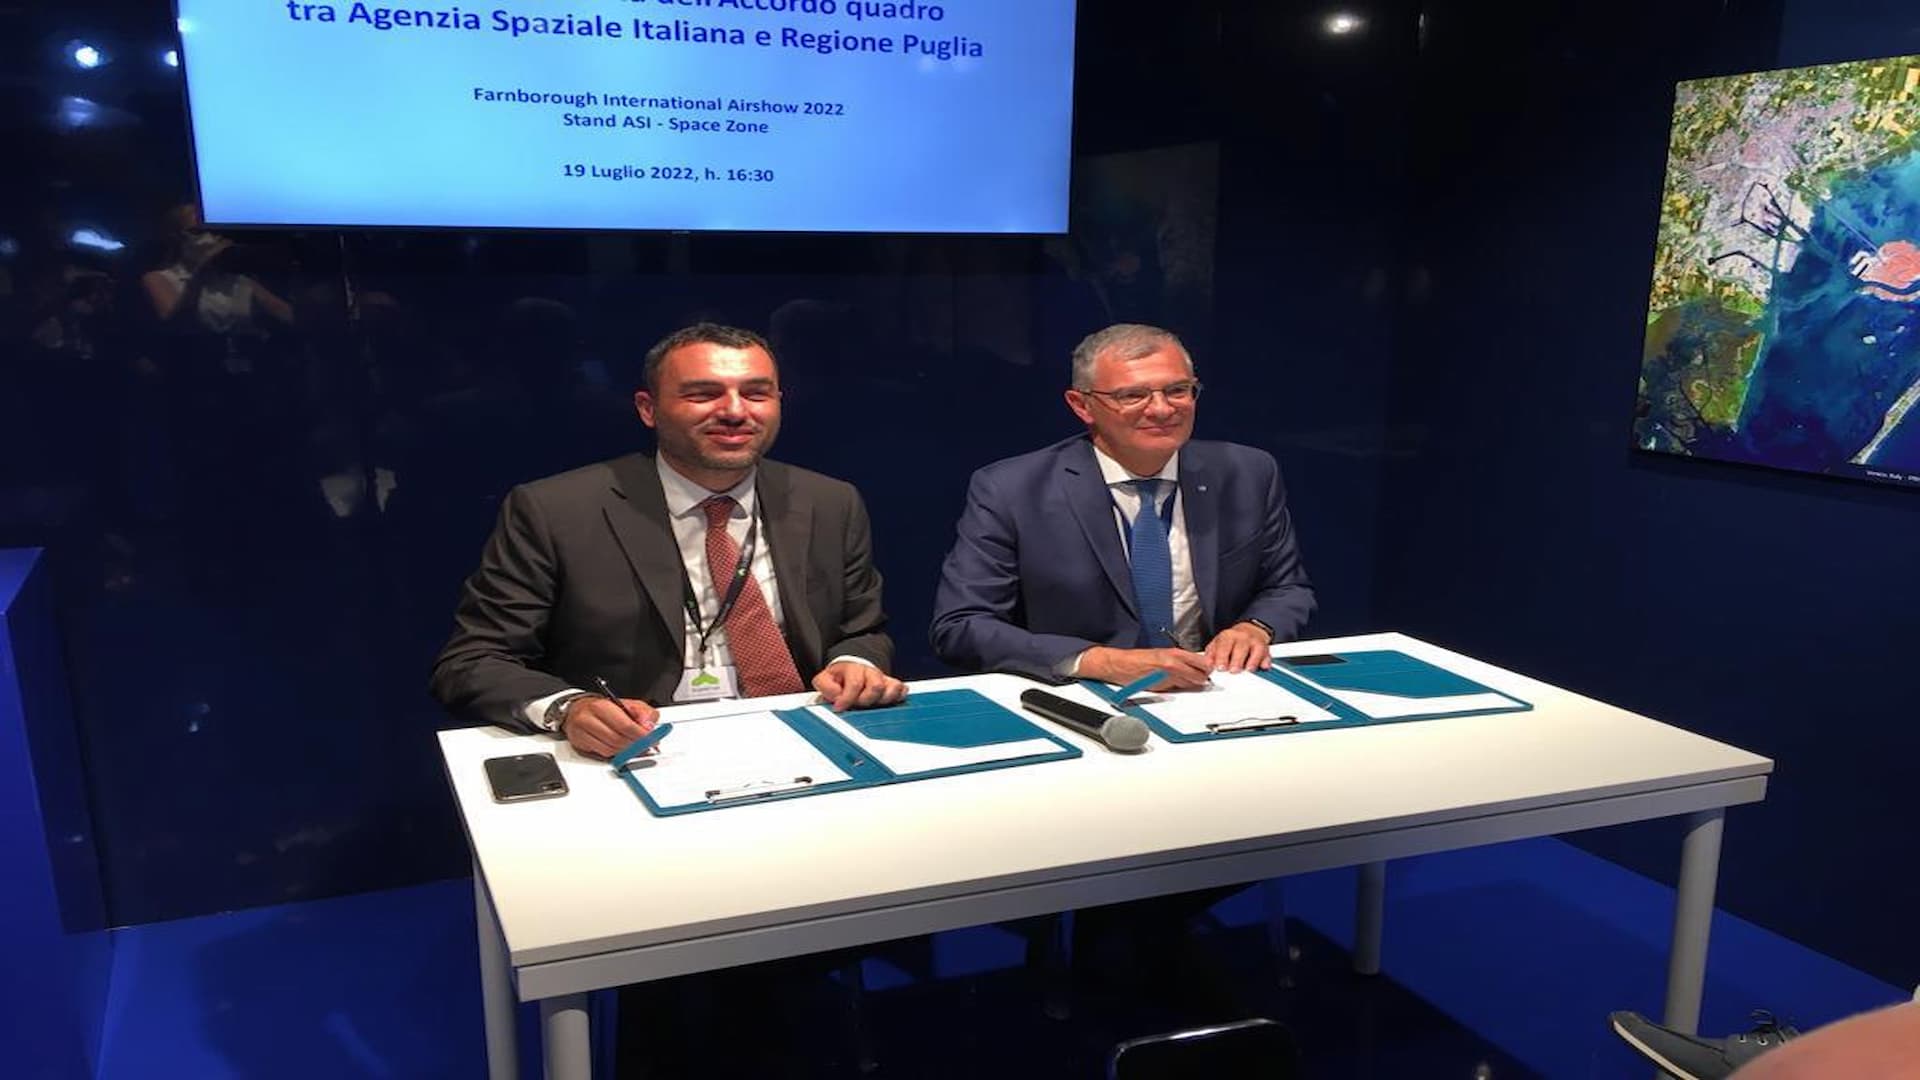 ASI - Sottoscritto l’Accordo Quadro tra Agenzia Spaziale Italiana e Regione Puglia